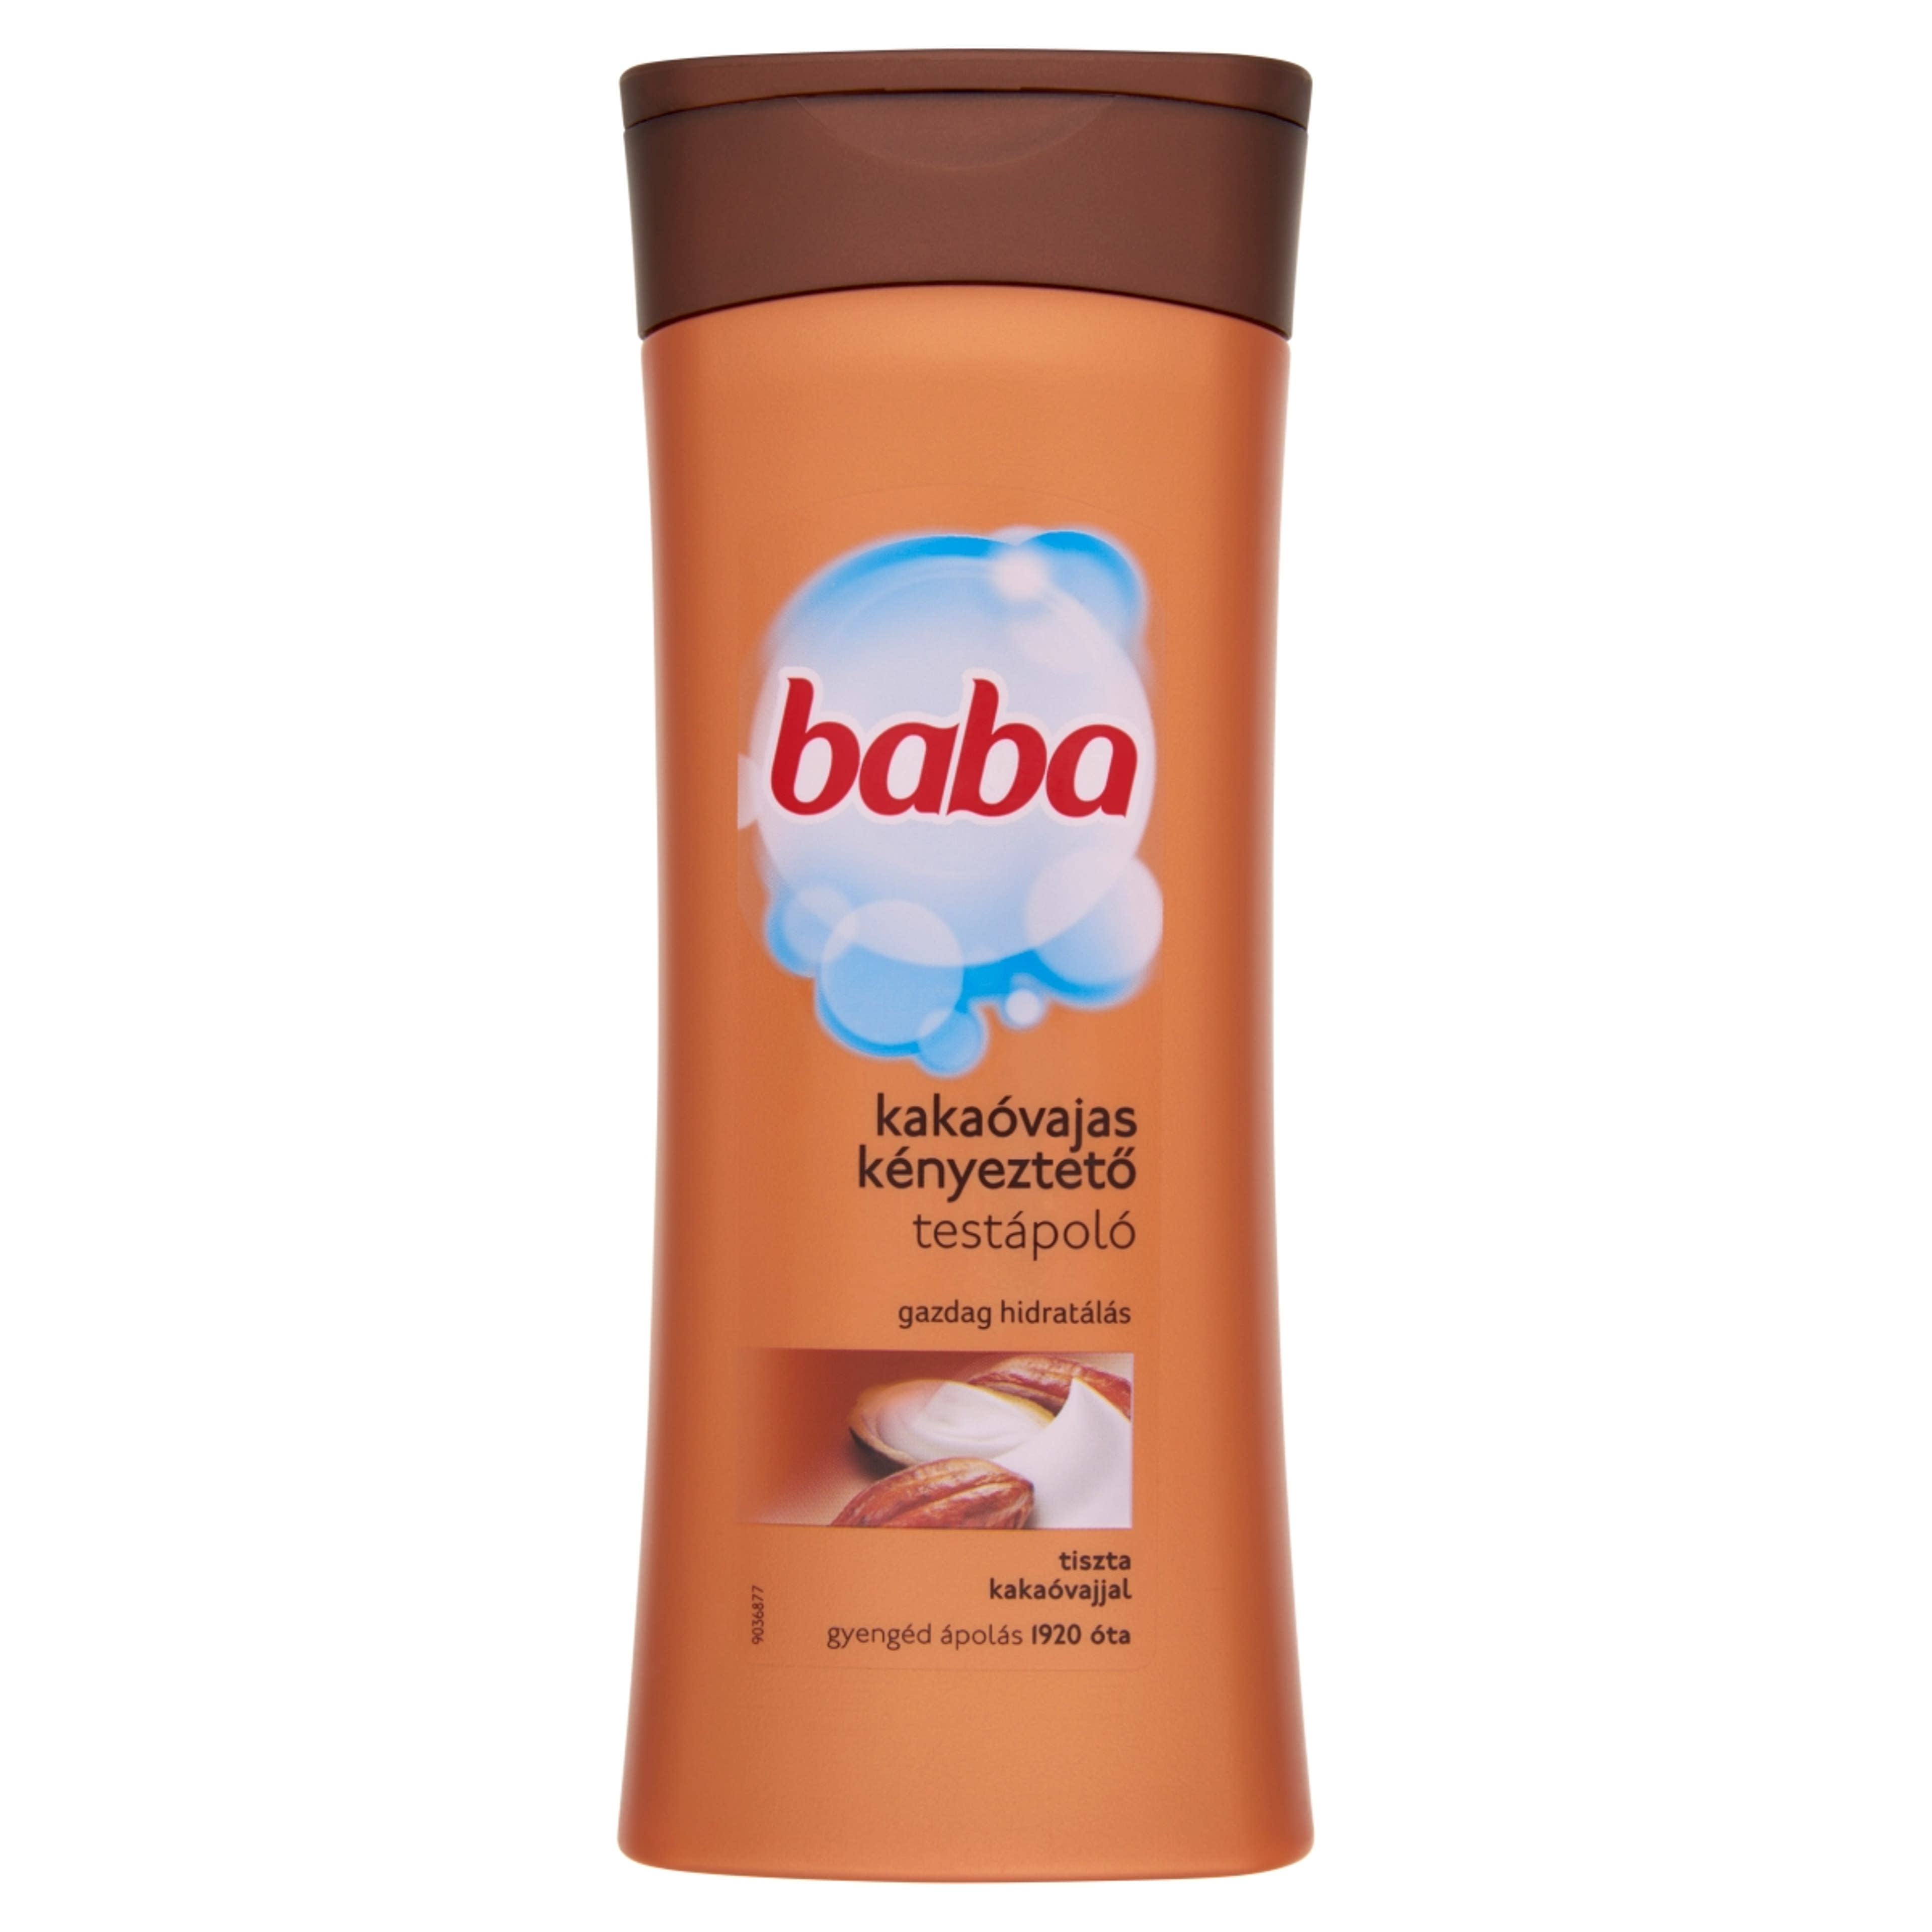 Baba testápoló Kakaóvaj kényeztető hidratálás - 400 ml-1